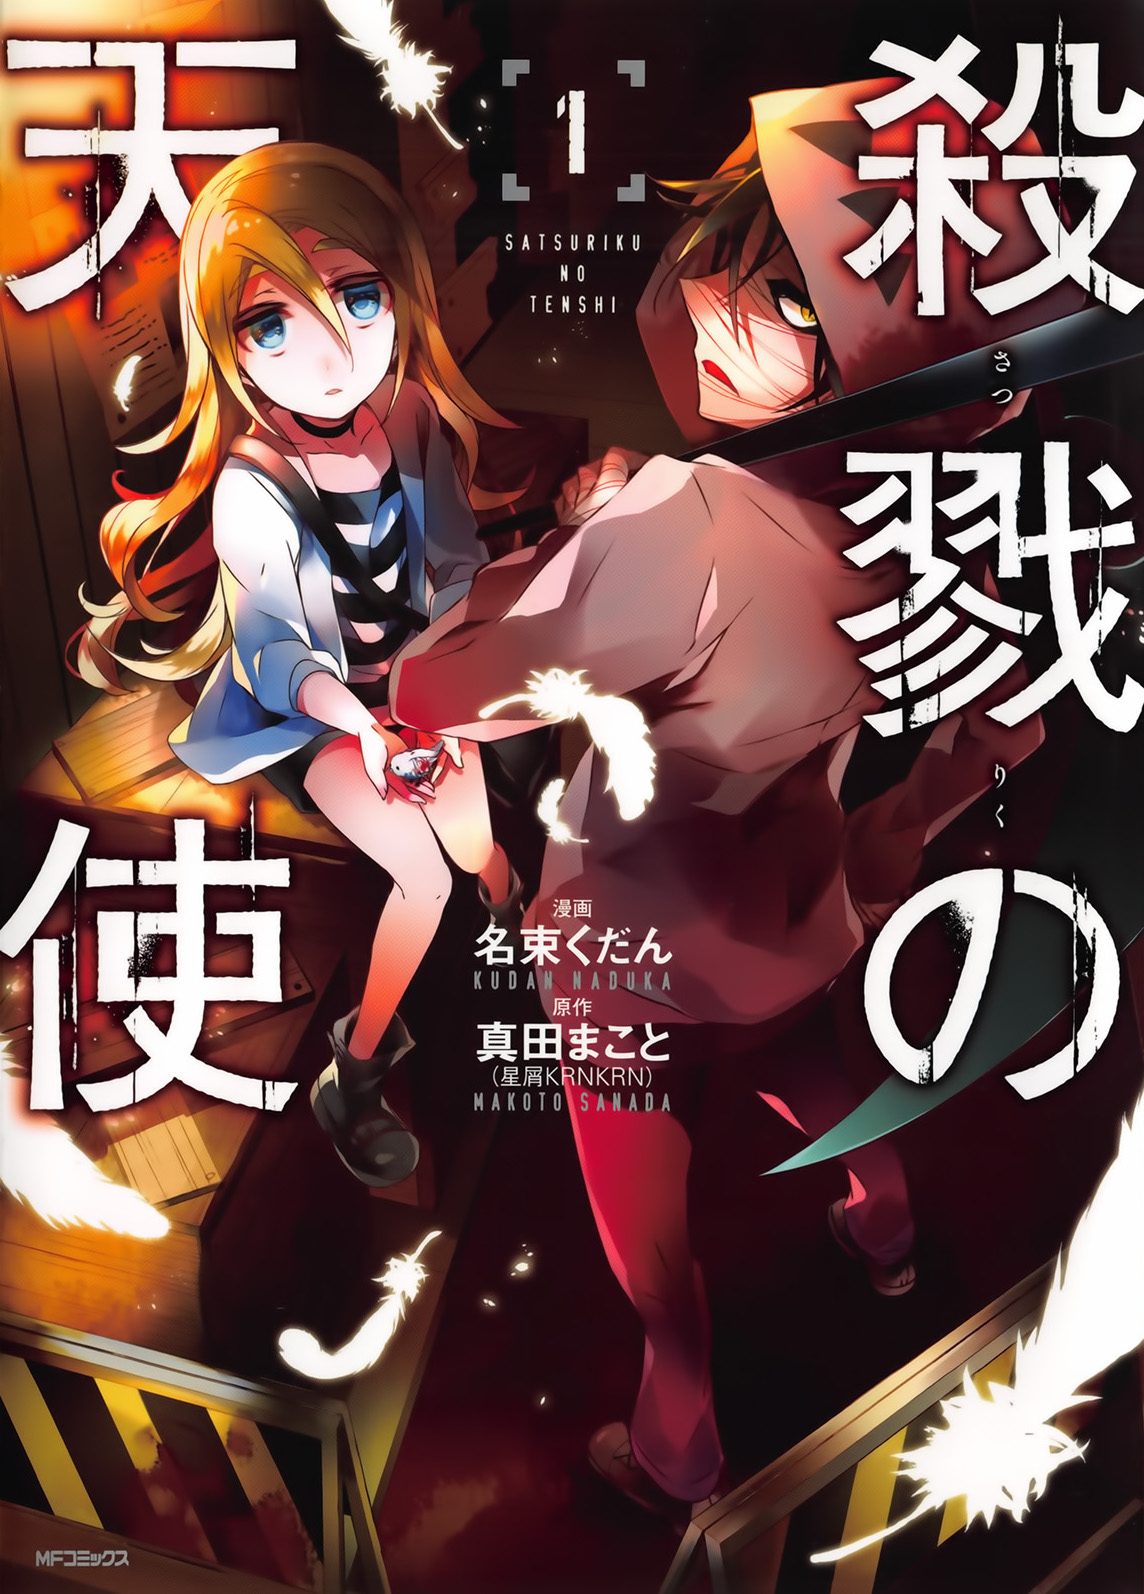 Angels of Death (Manga) | Satsuriku no Tenshi Wiki | Fandom